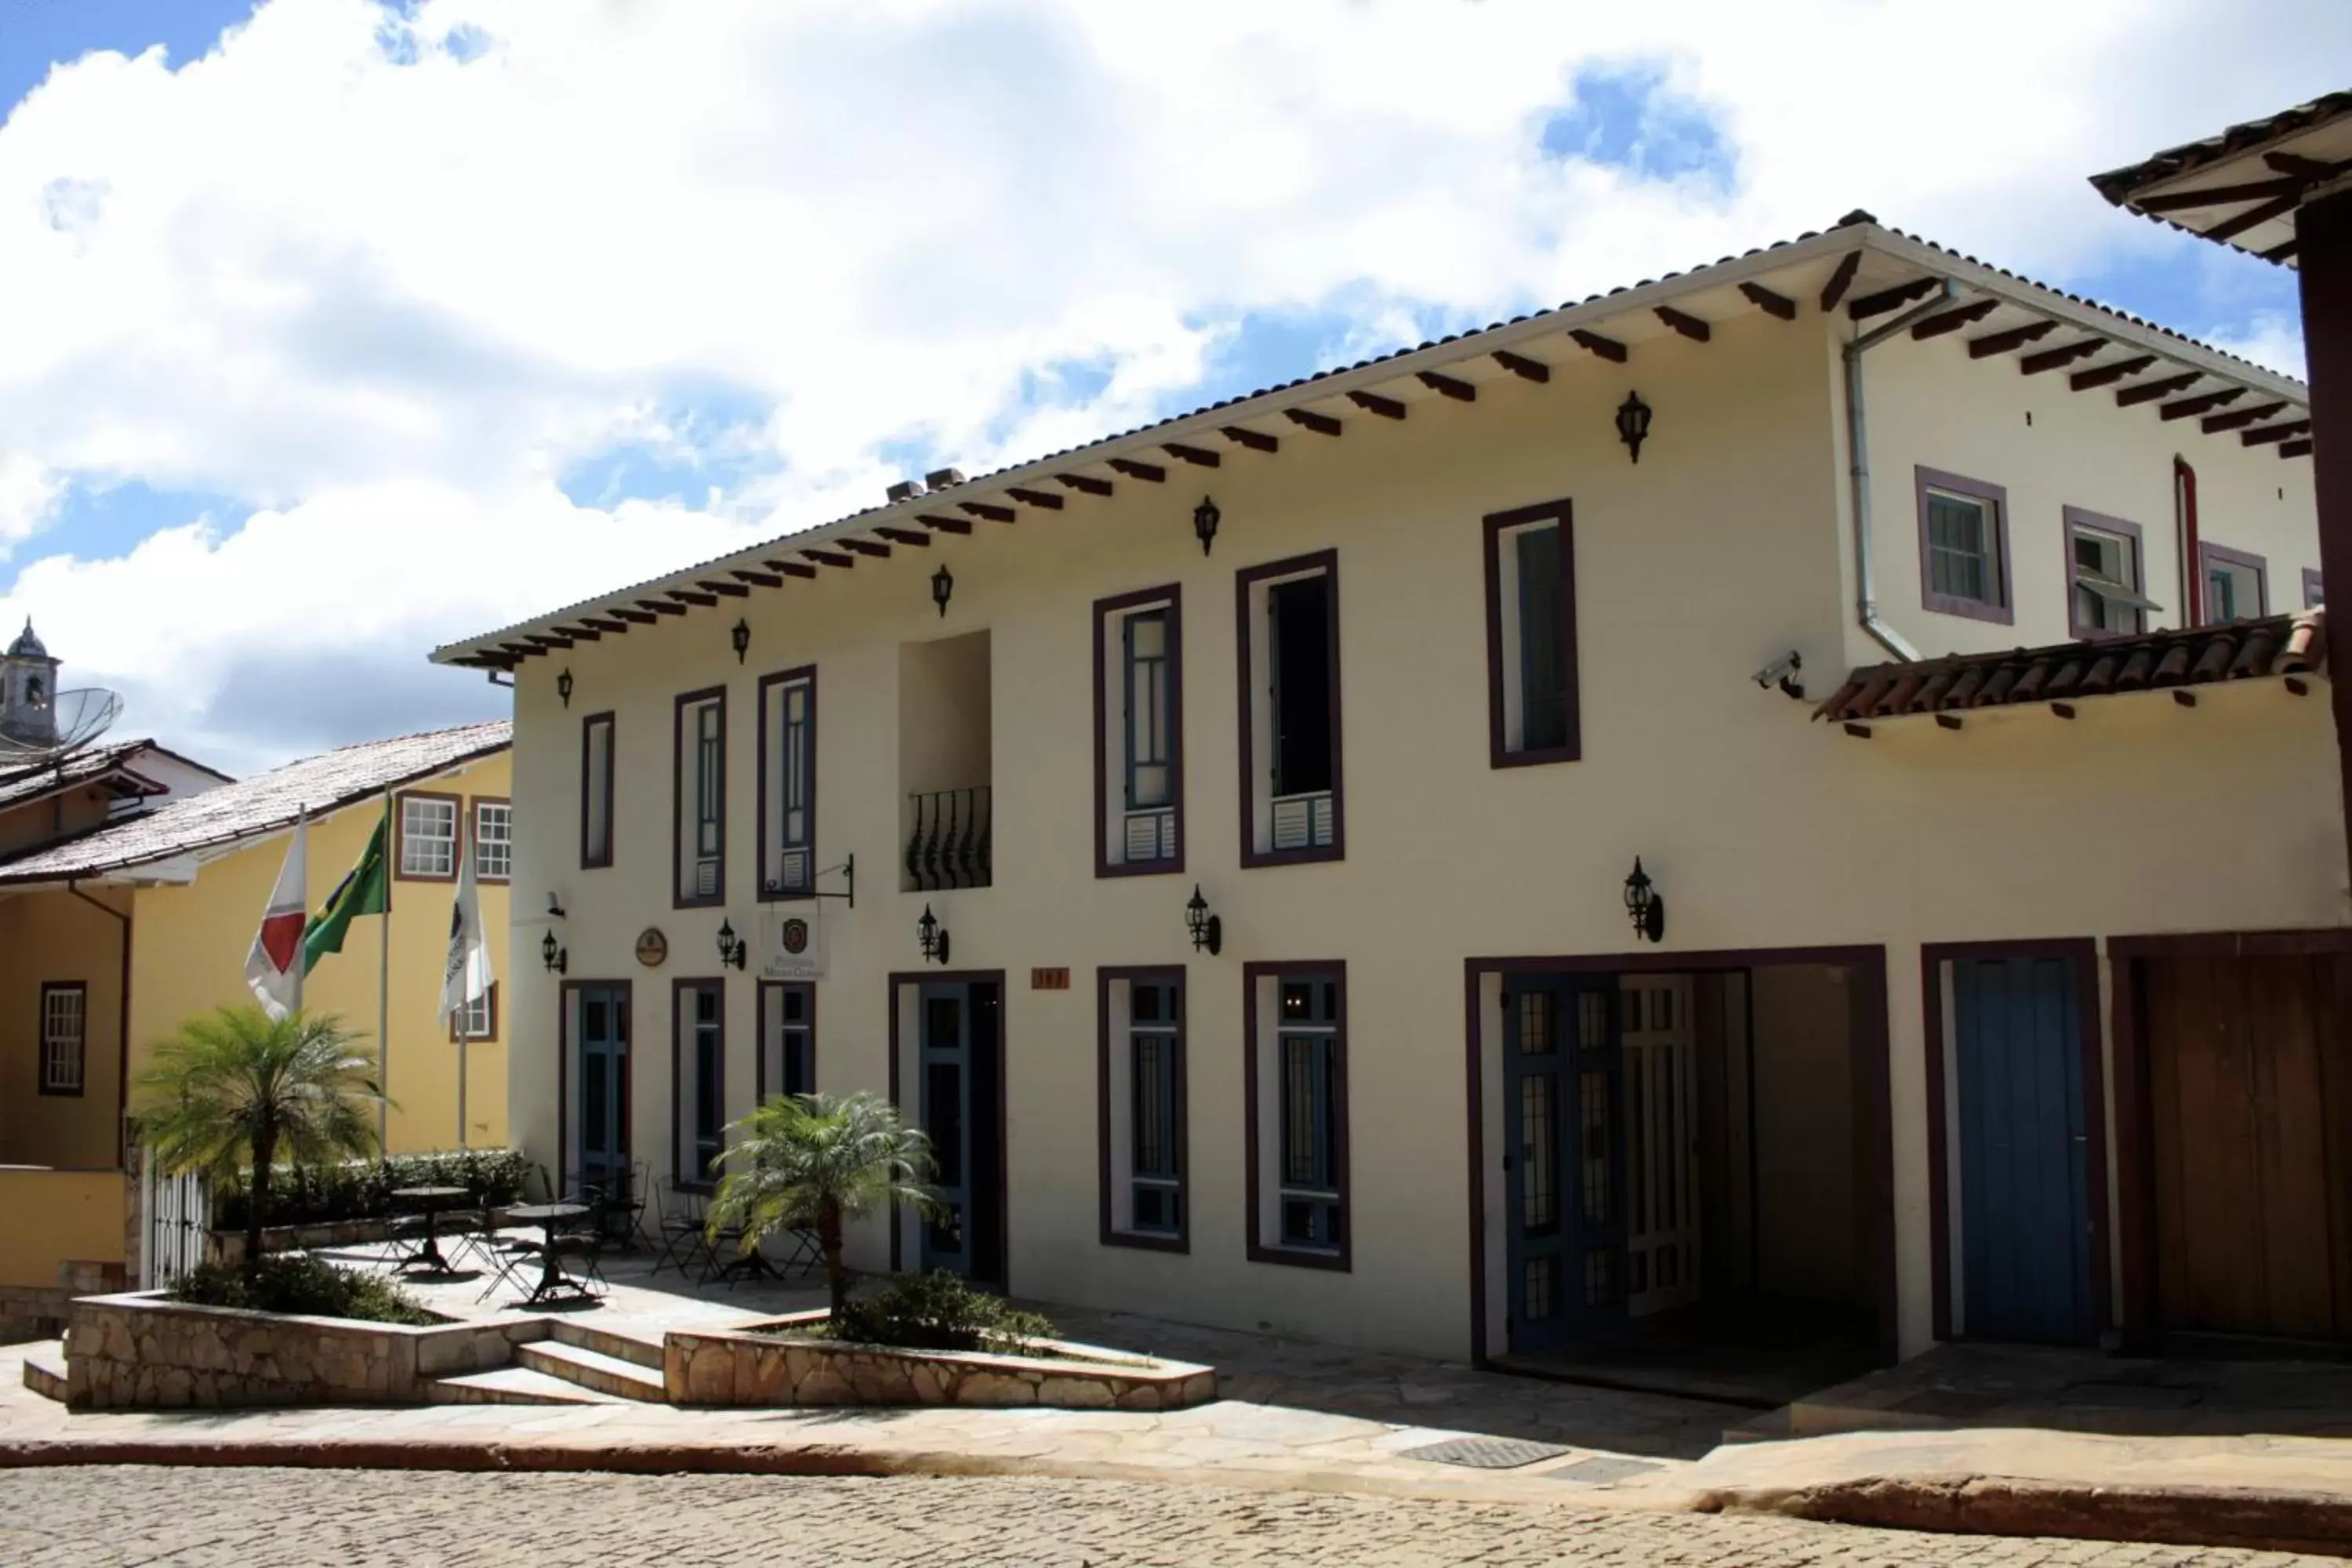 Facade/entrance, Property Building in Hotel Pousada Minas Gerais